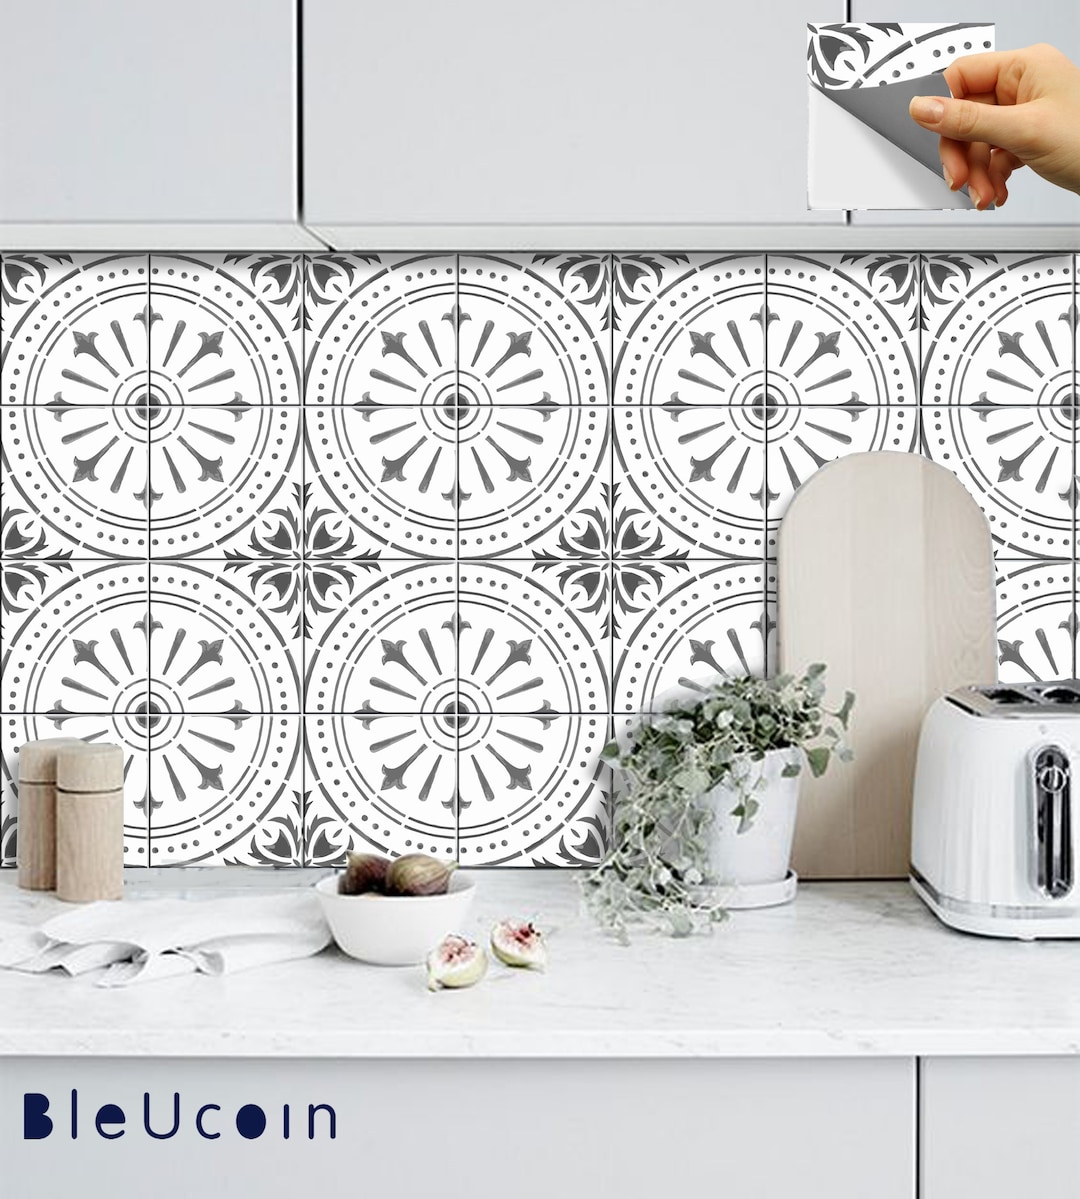 Tile Sticker Kitchen, Bath, Floor, Wall Waterproof & Removable Peel N  Stick: A65 